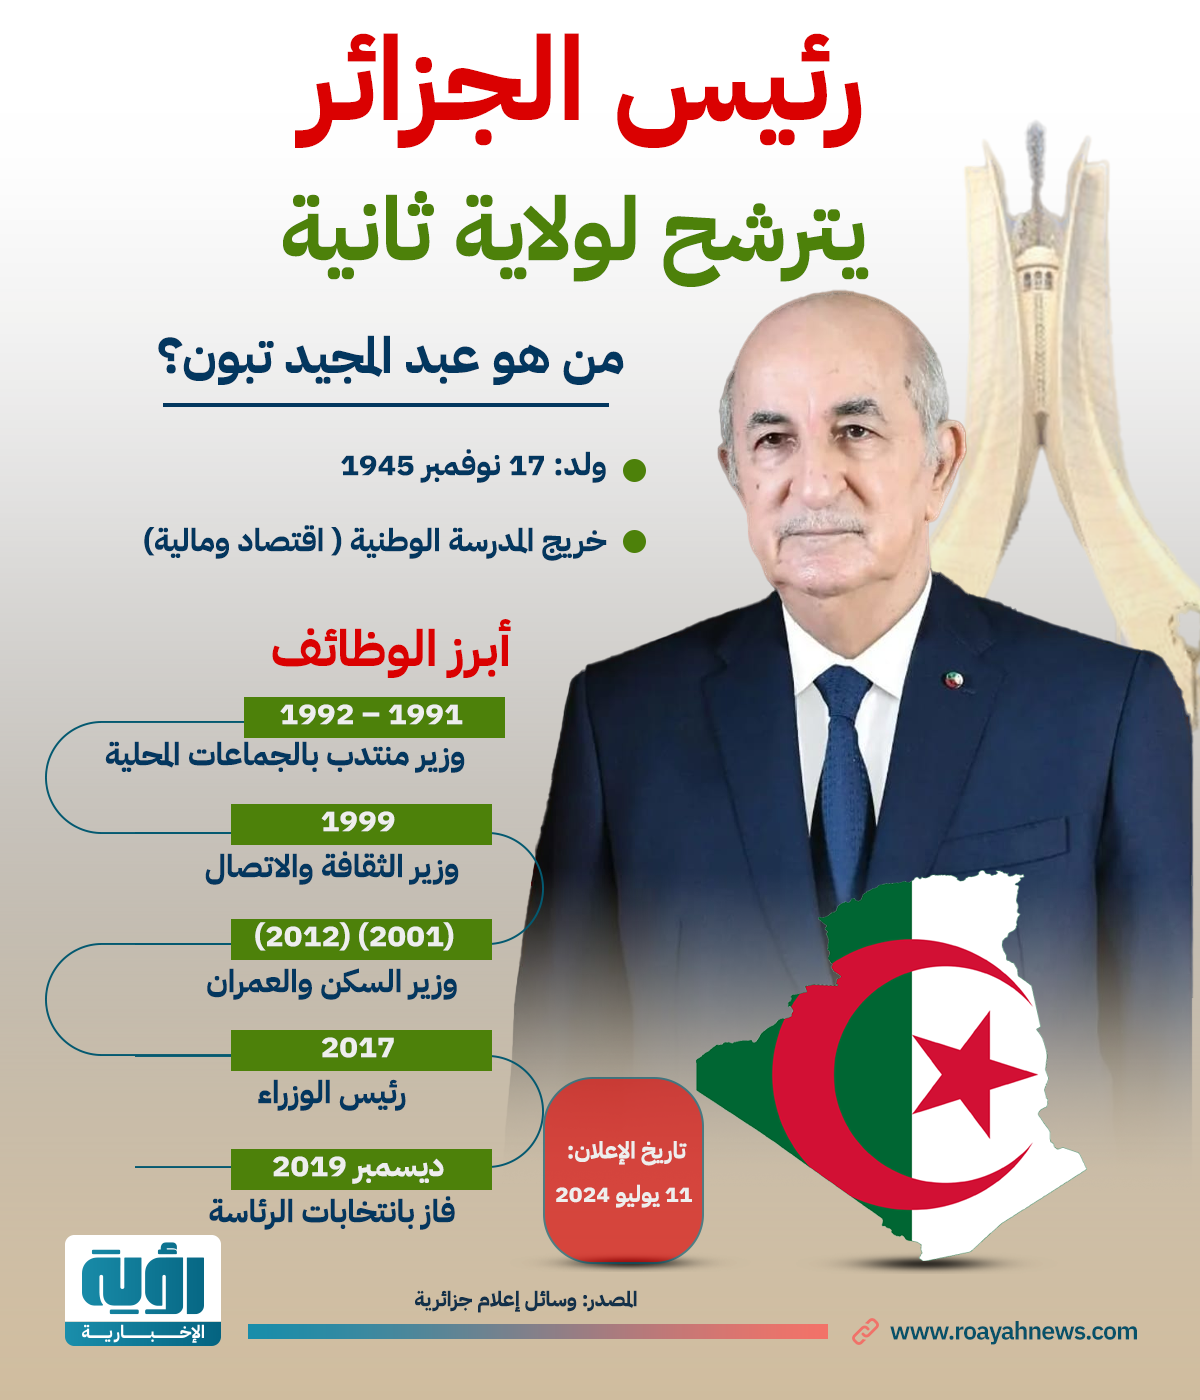 طولي رئيس الجزائر يترشح لولاية ثانية 1